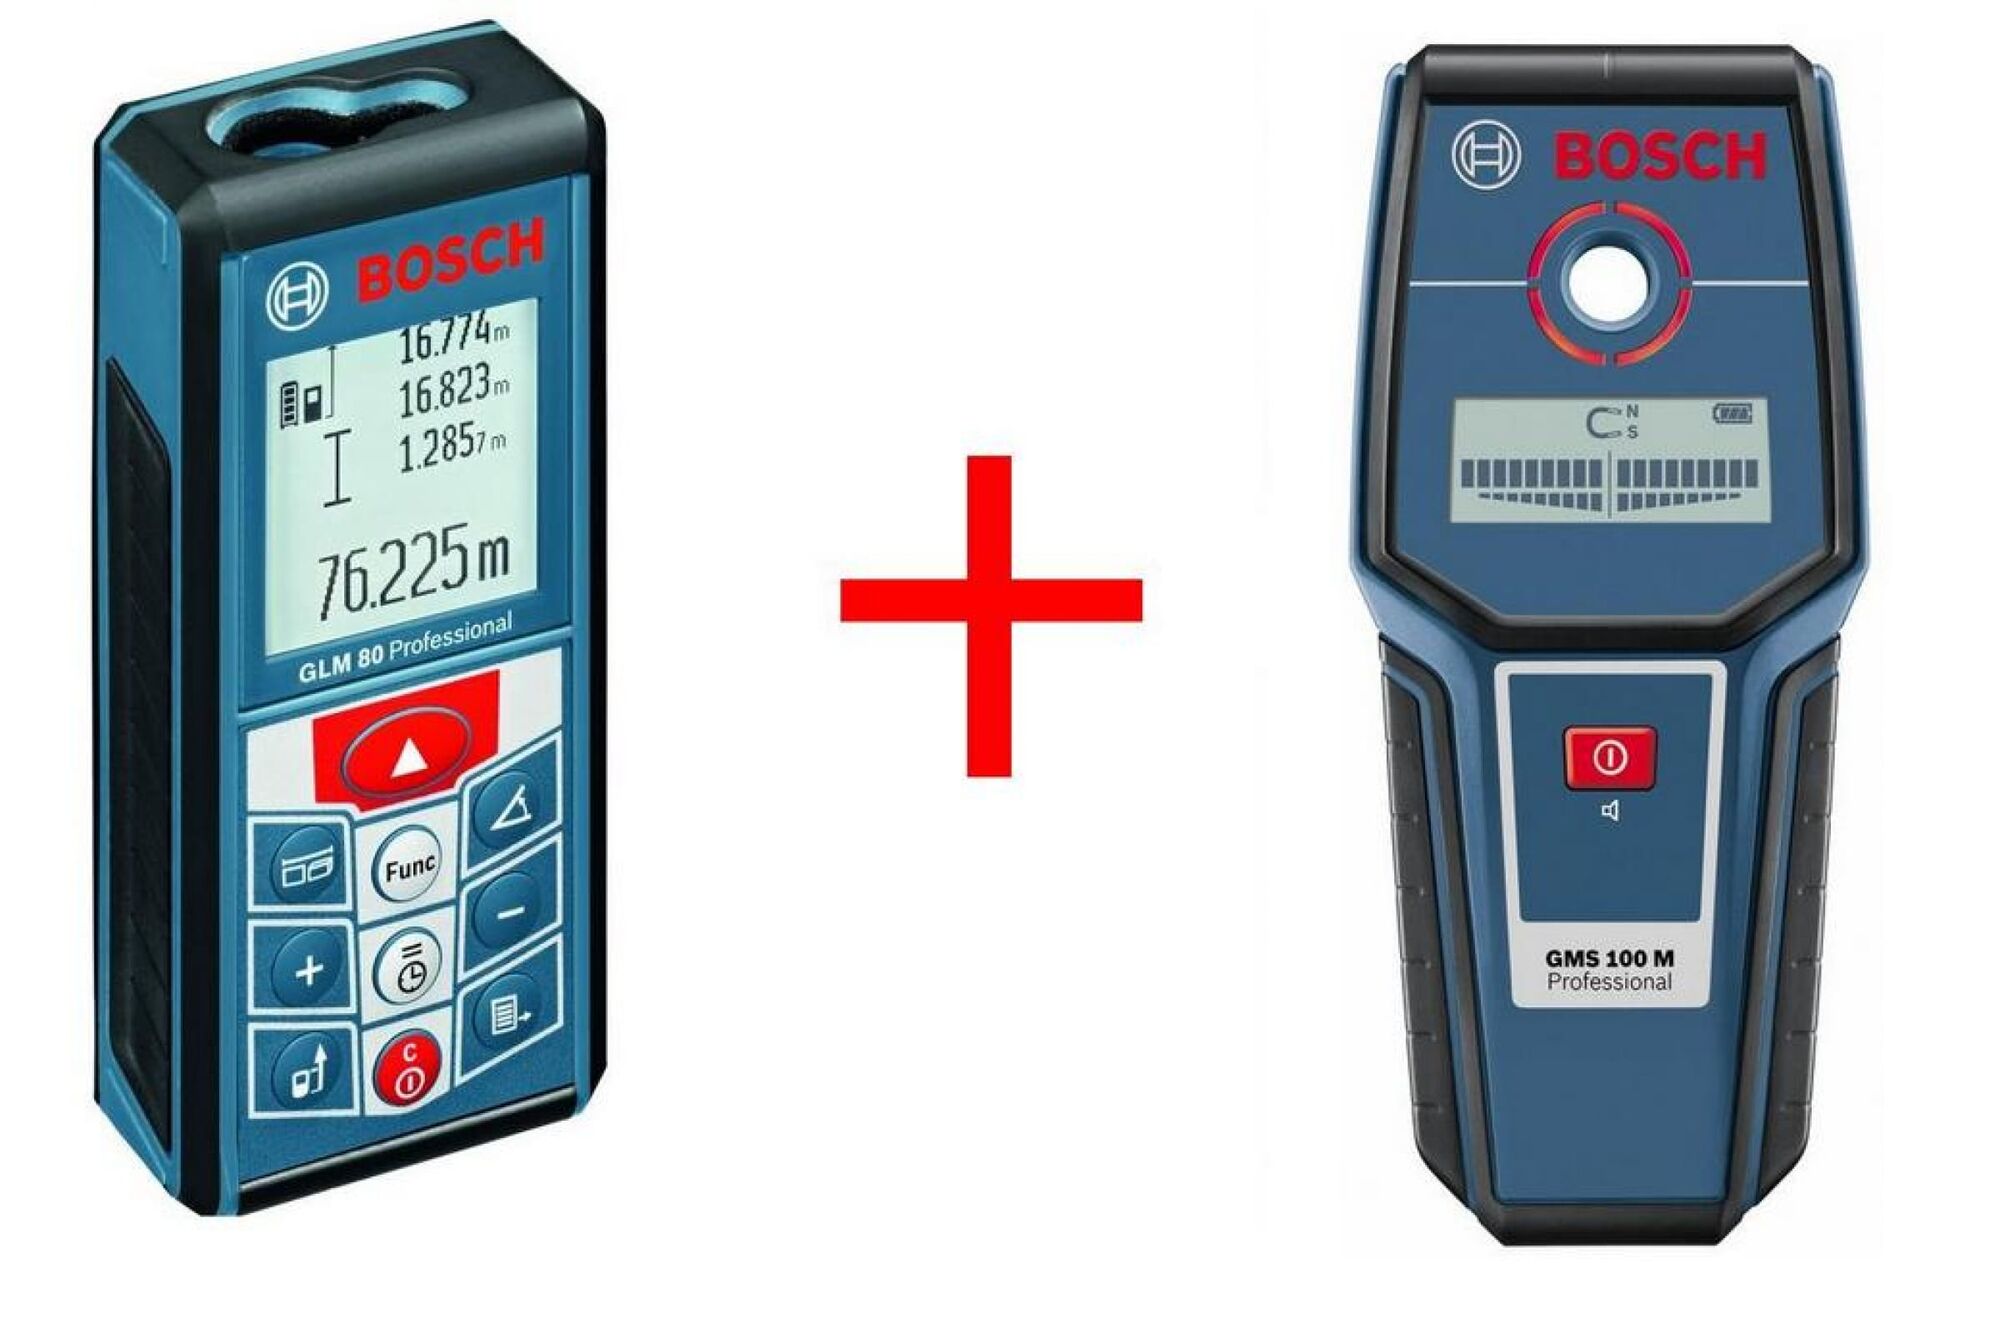 Набор измерительного инструмента Bosch: дальномер GLM 80 + детектор GMS 100M 0.615.994.0AU